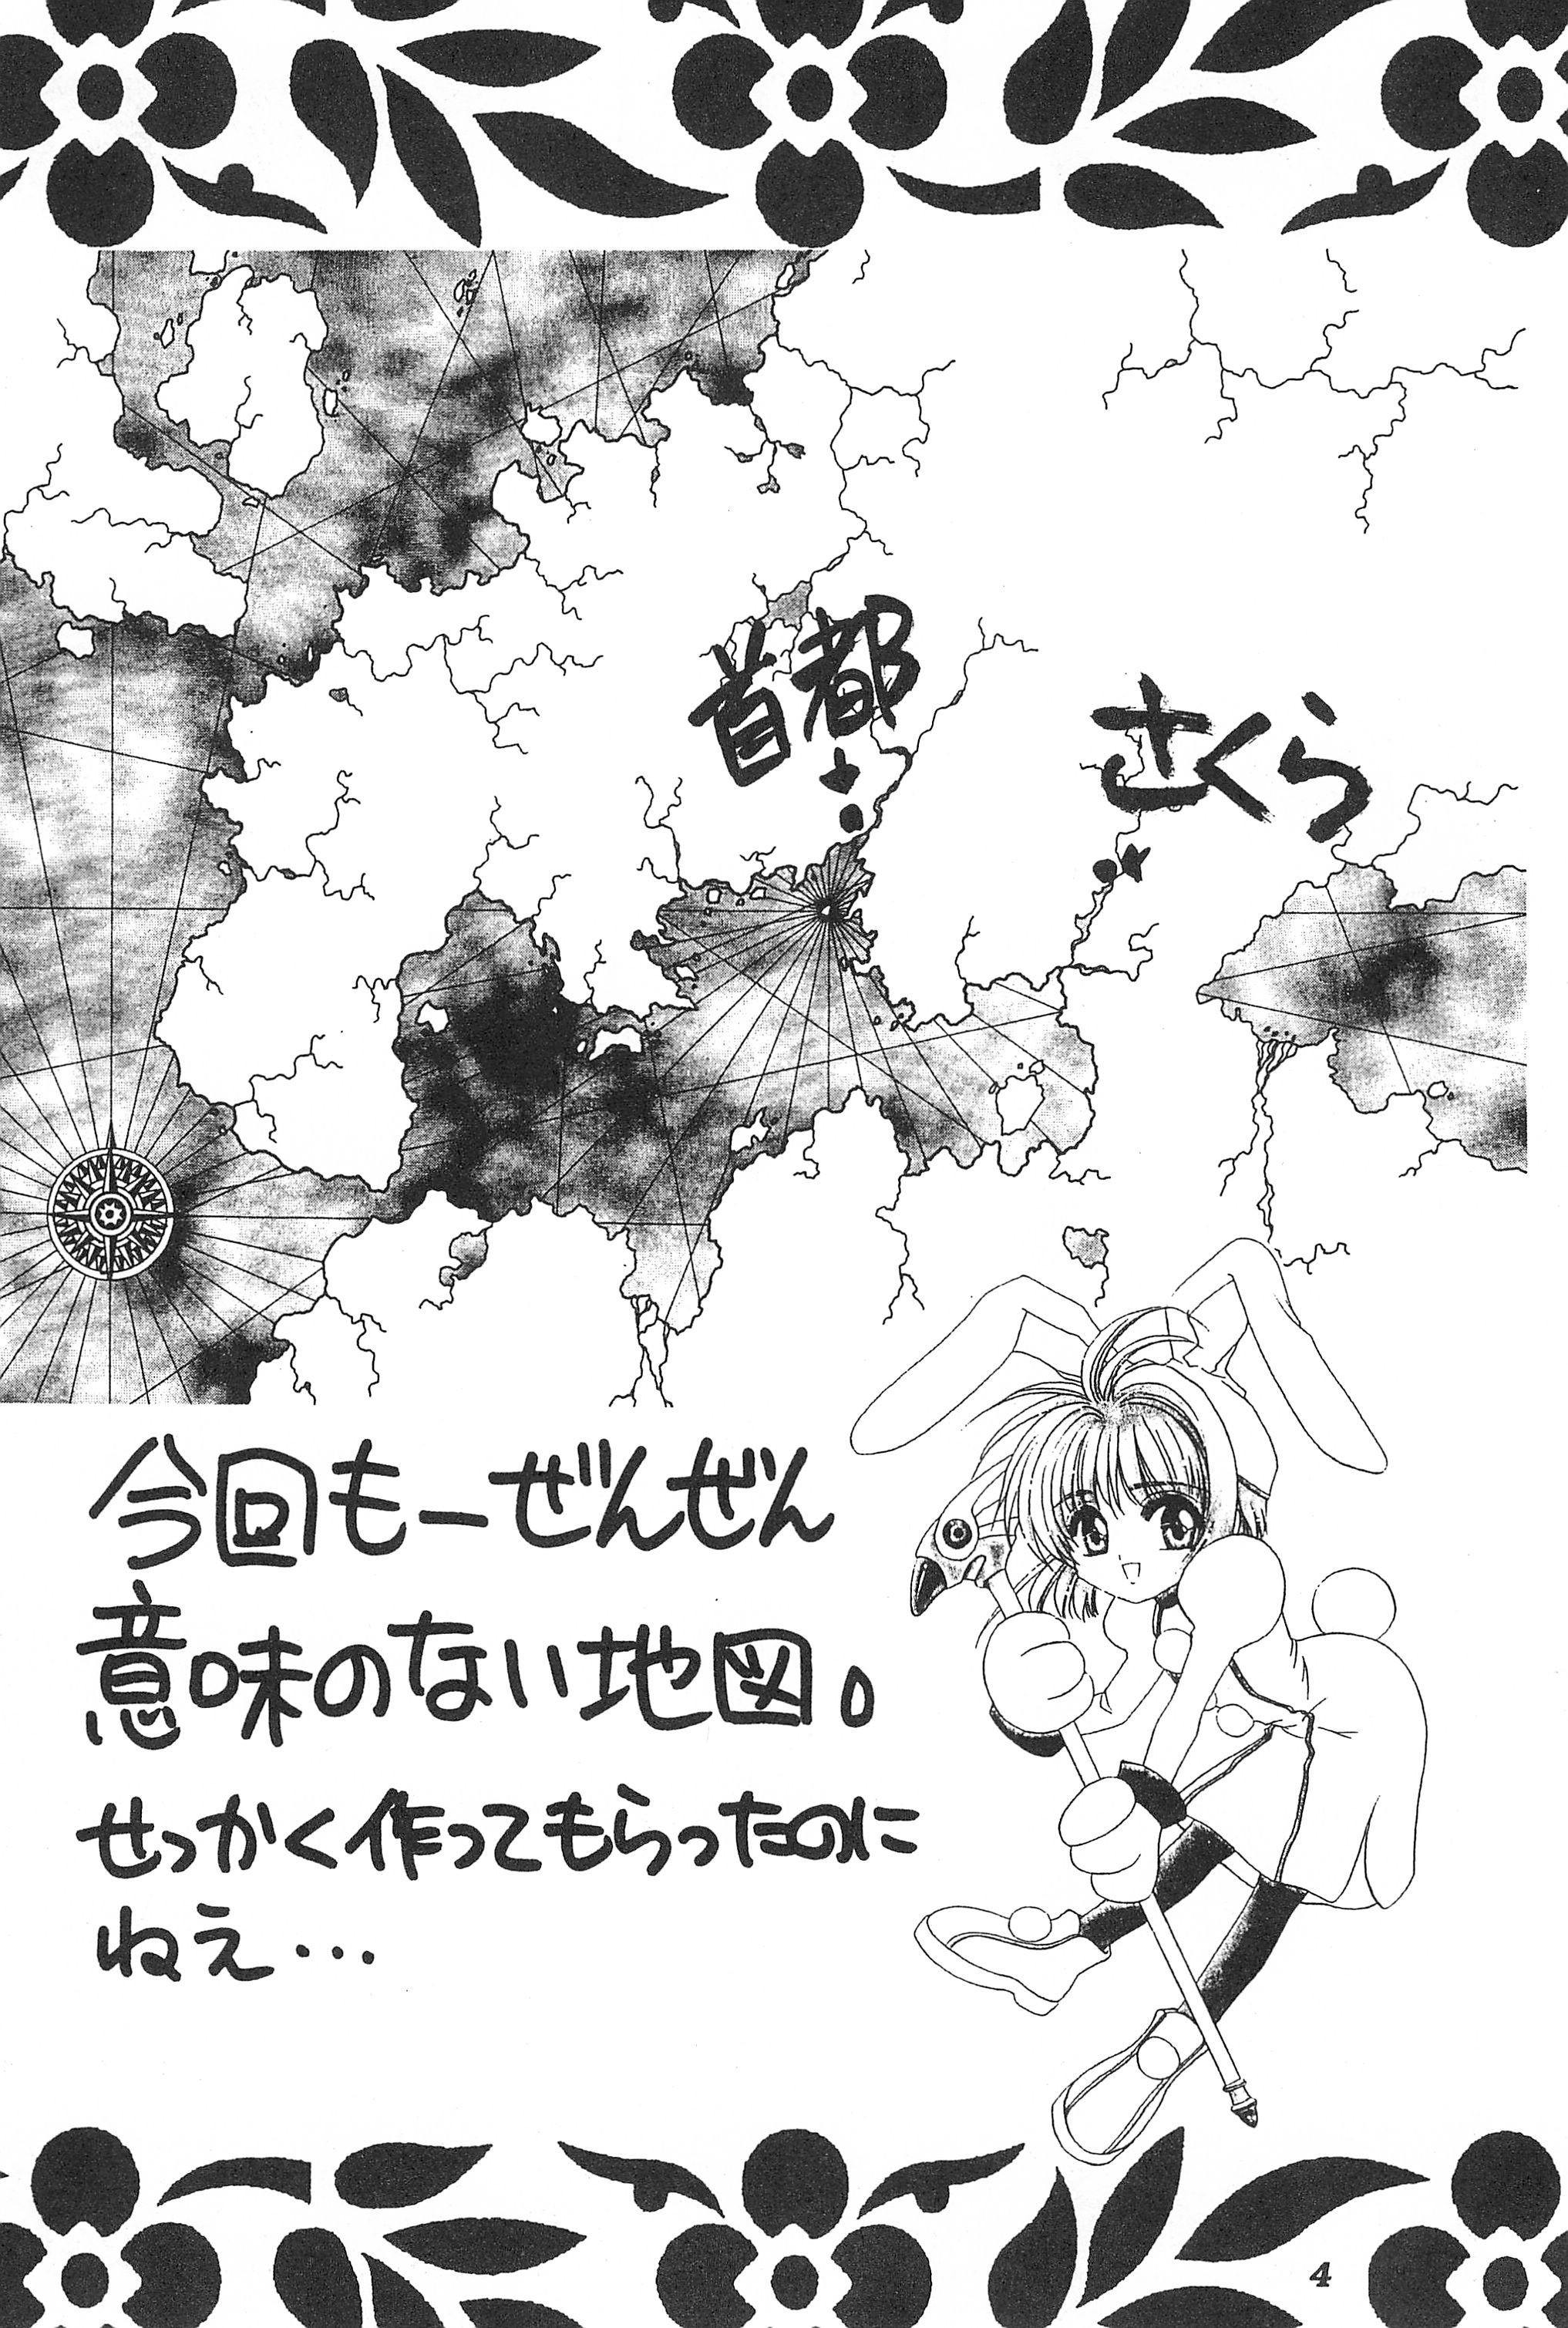 Grandpa Akatsuki Teikoku 3 - Cardcaptor sakura Goldenshower - Page 6